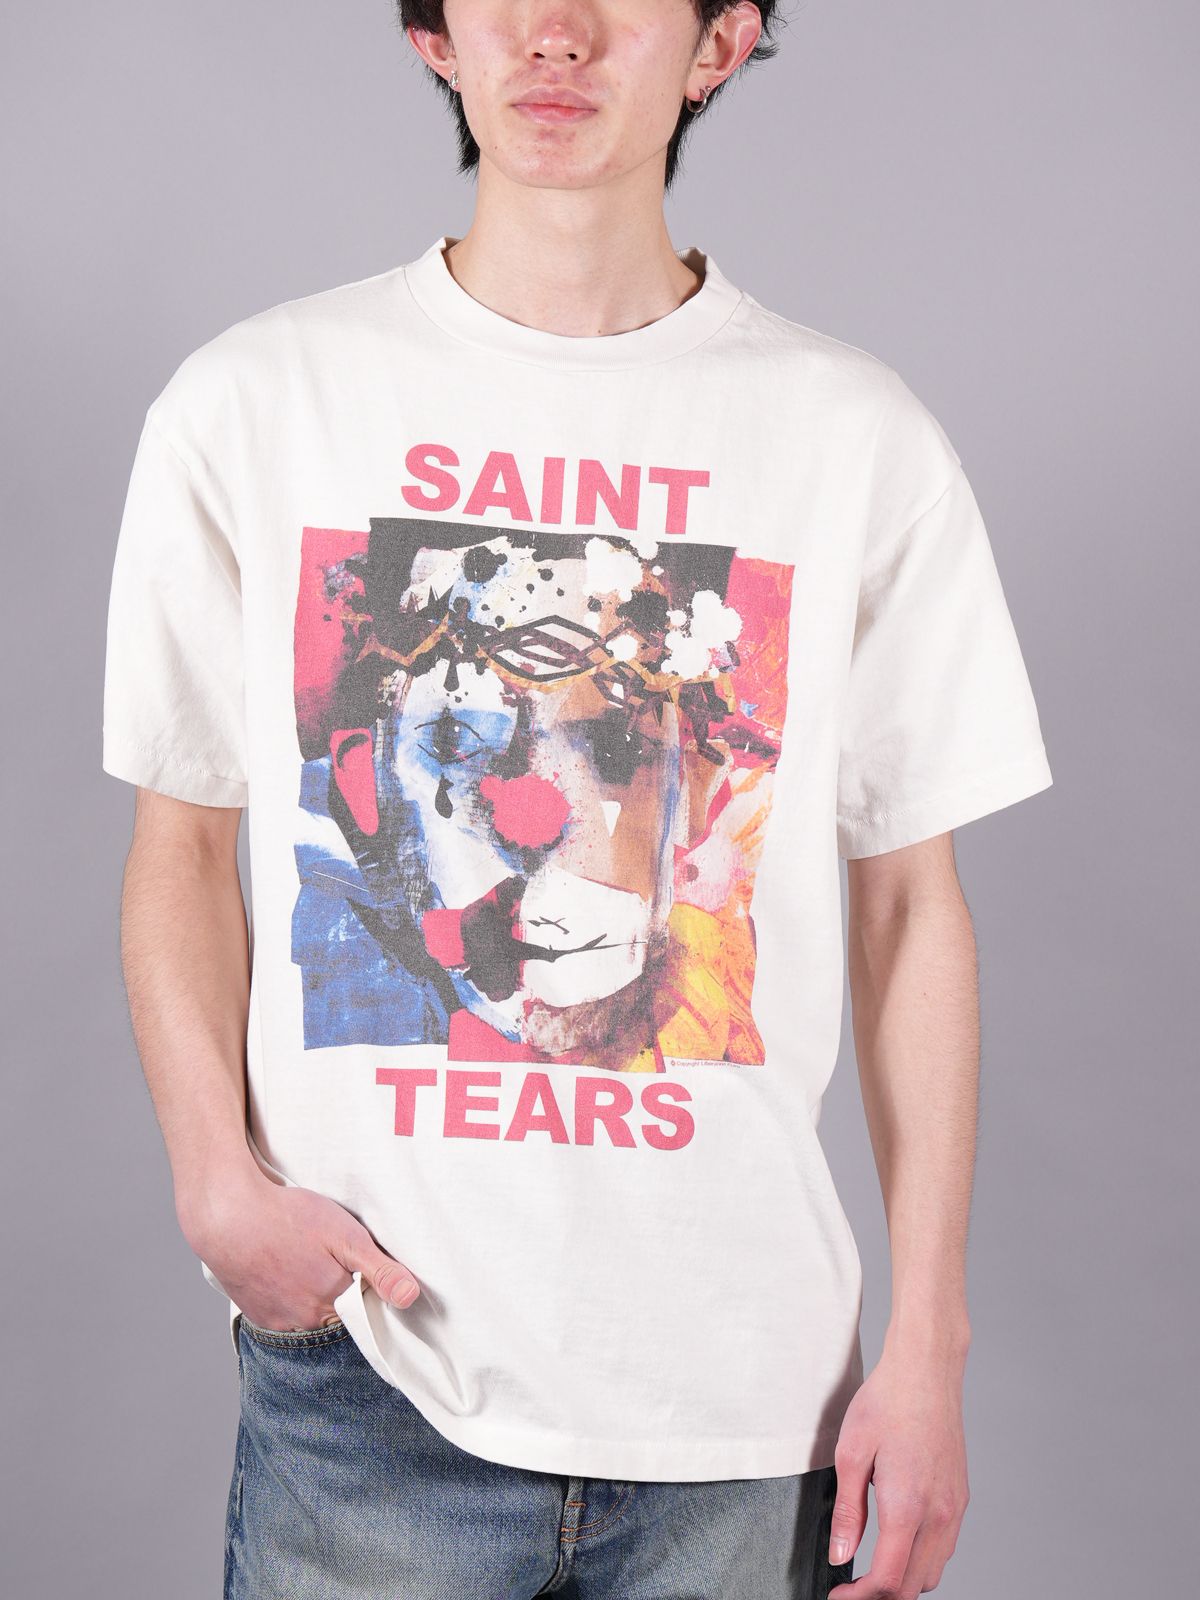 SAINT M×××××× SAINT TEARS Tシャツ - Tシャツ/カットソー(半袖/袖なし)